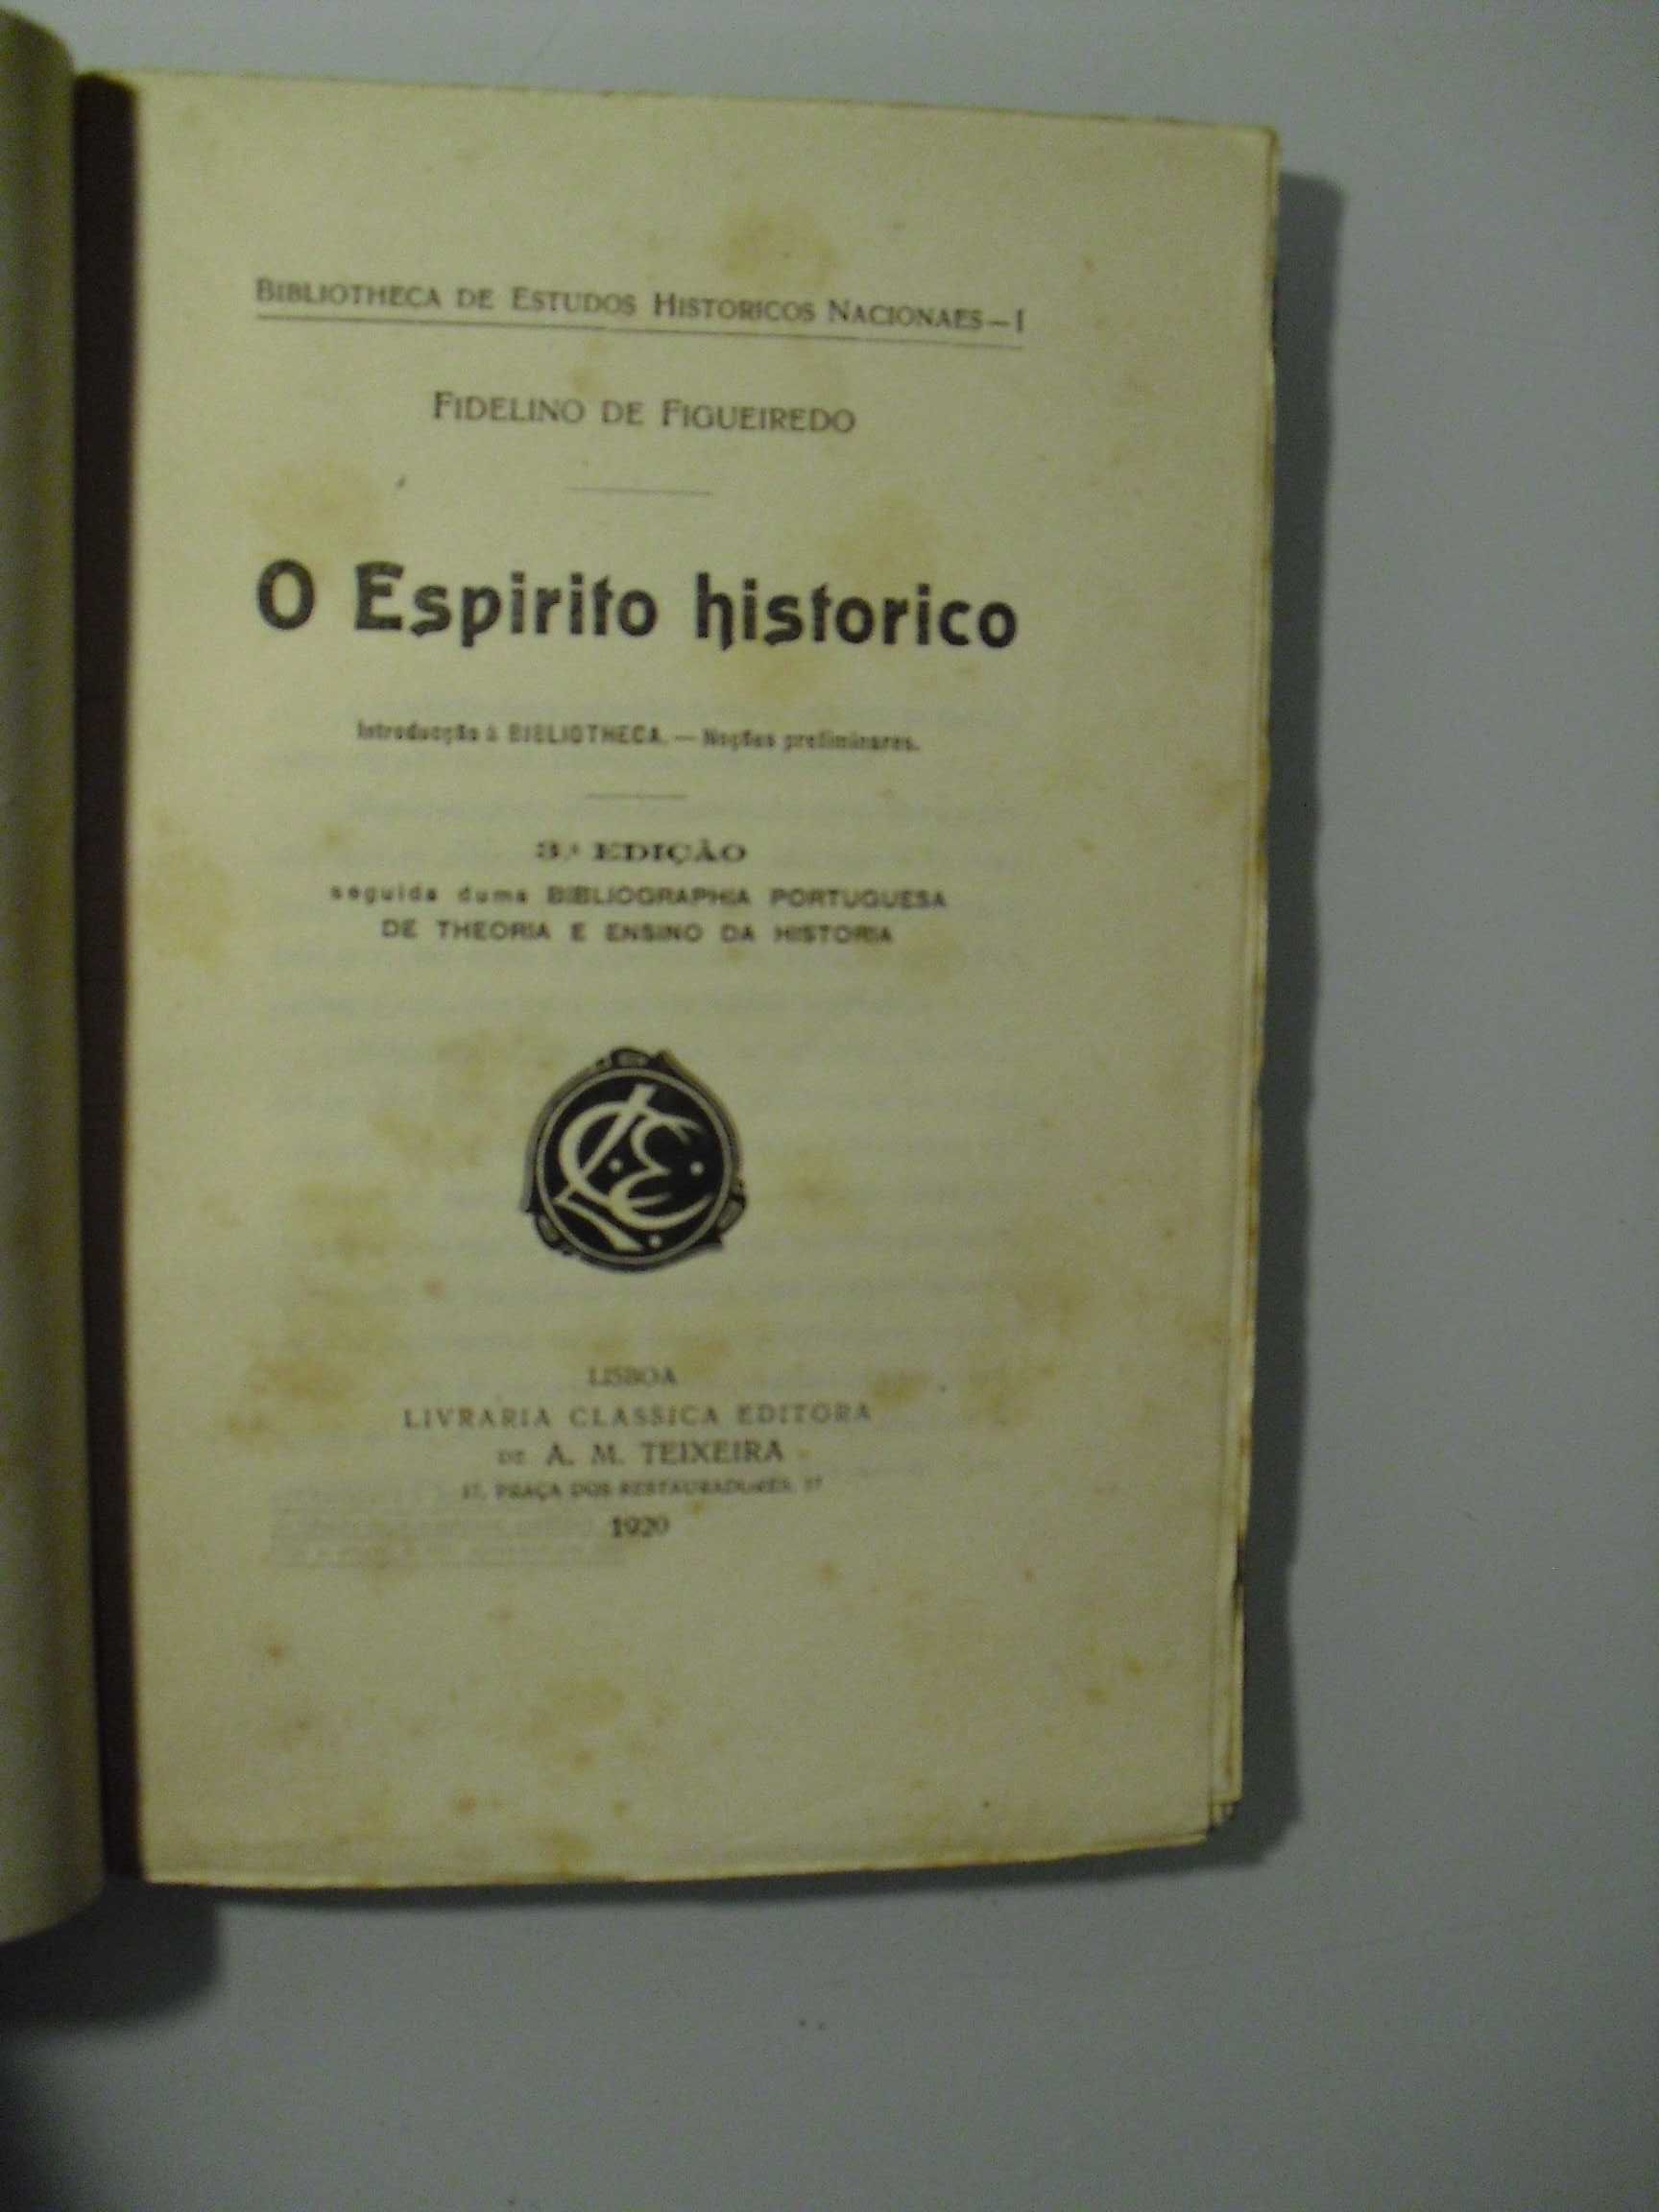 Figueiredo (Fidelino de);O Espirito Histórico-Introdução à Biblioteca